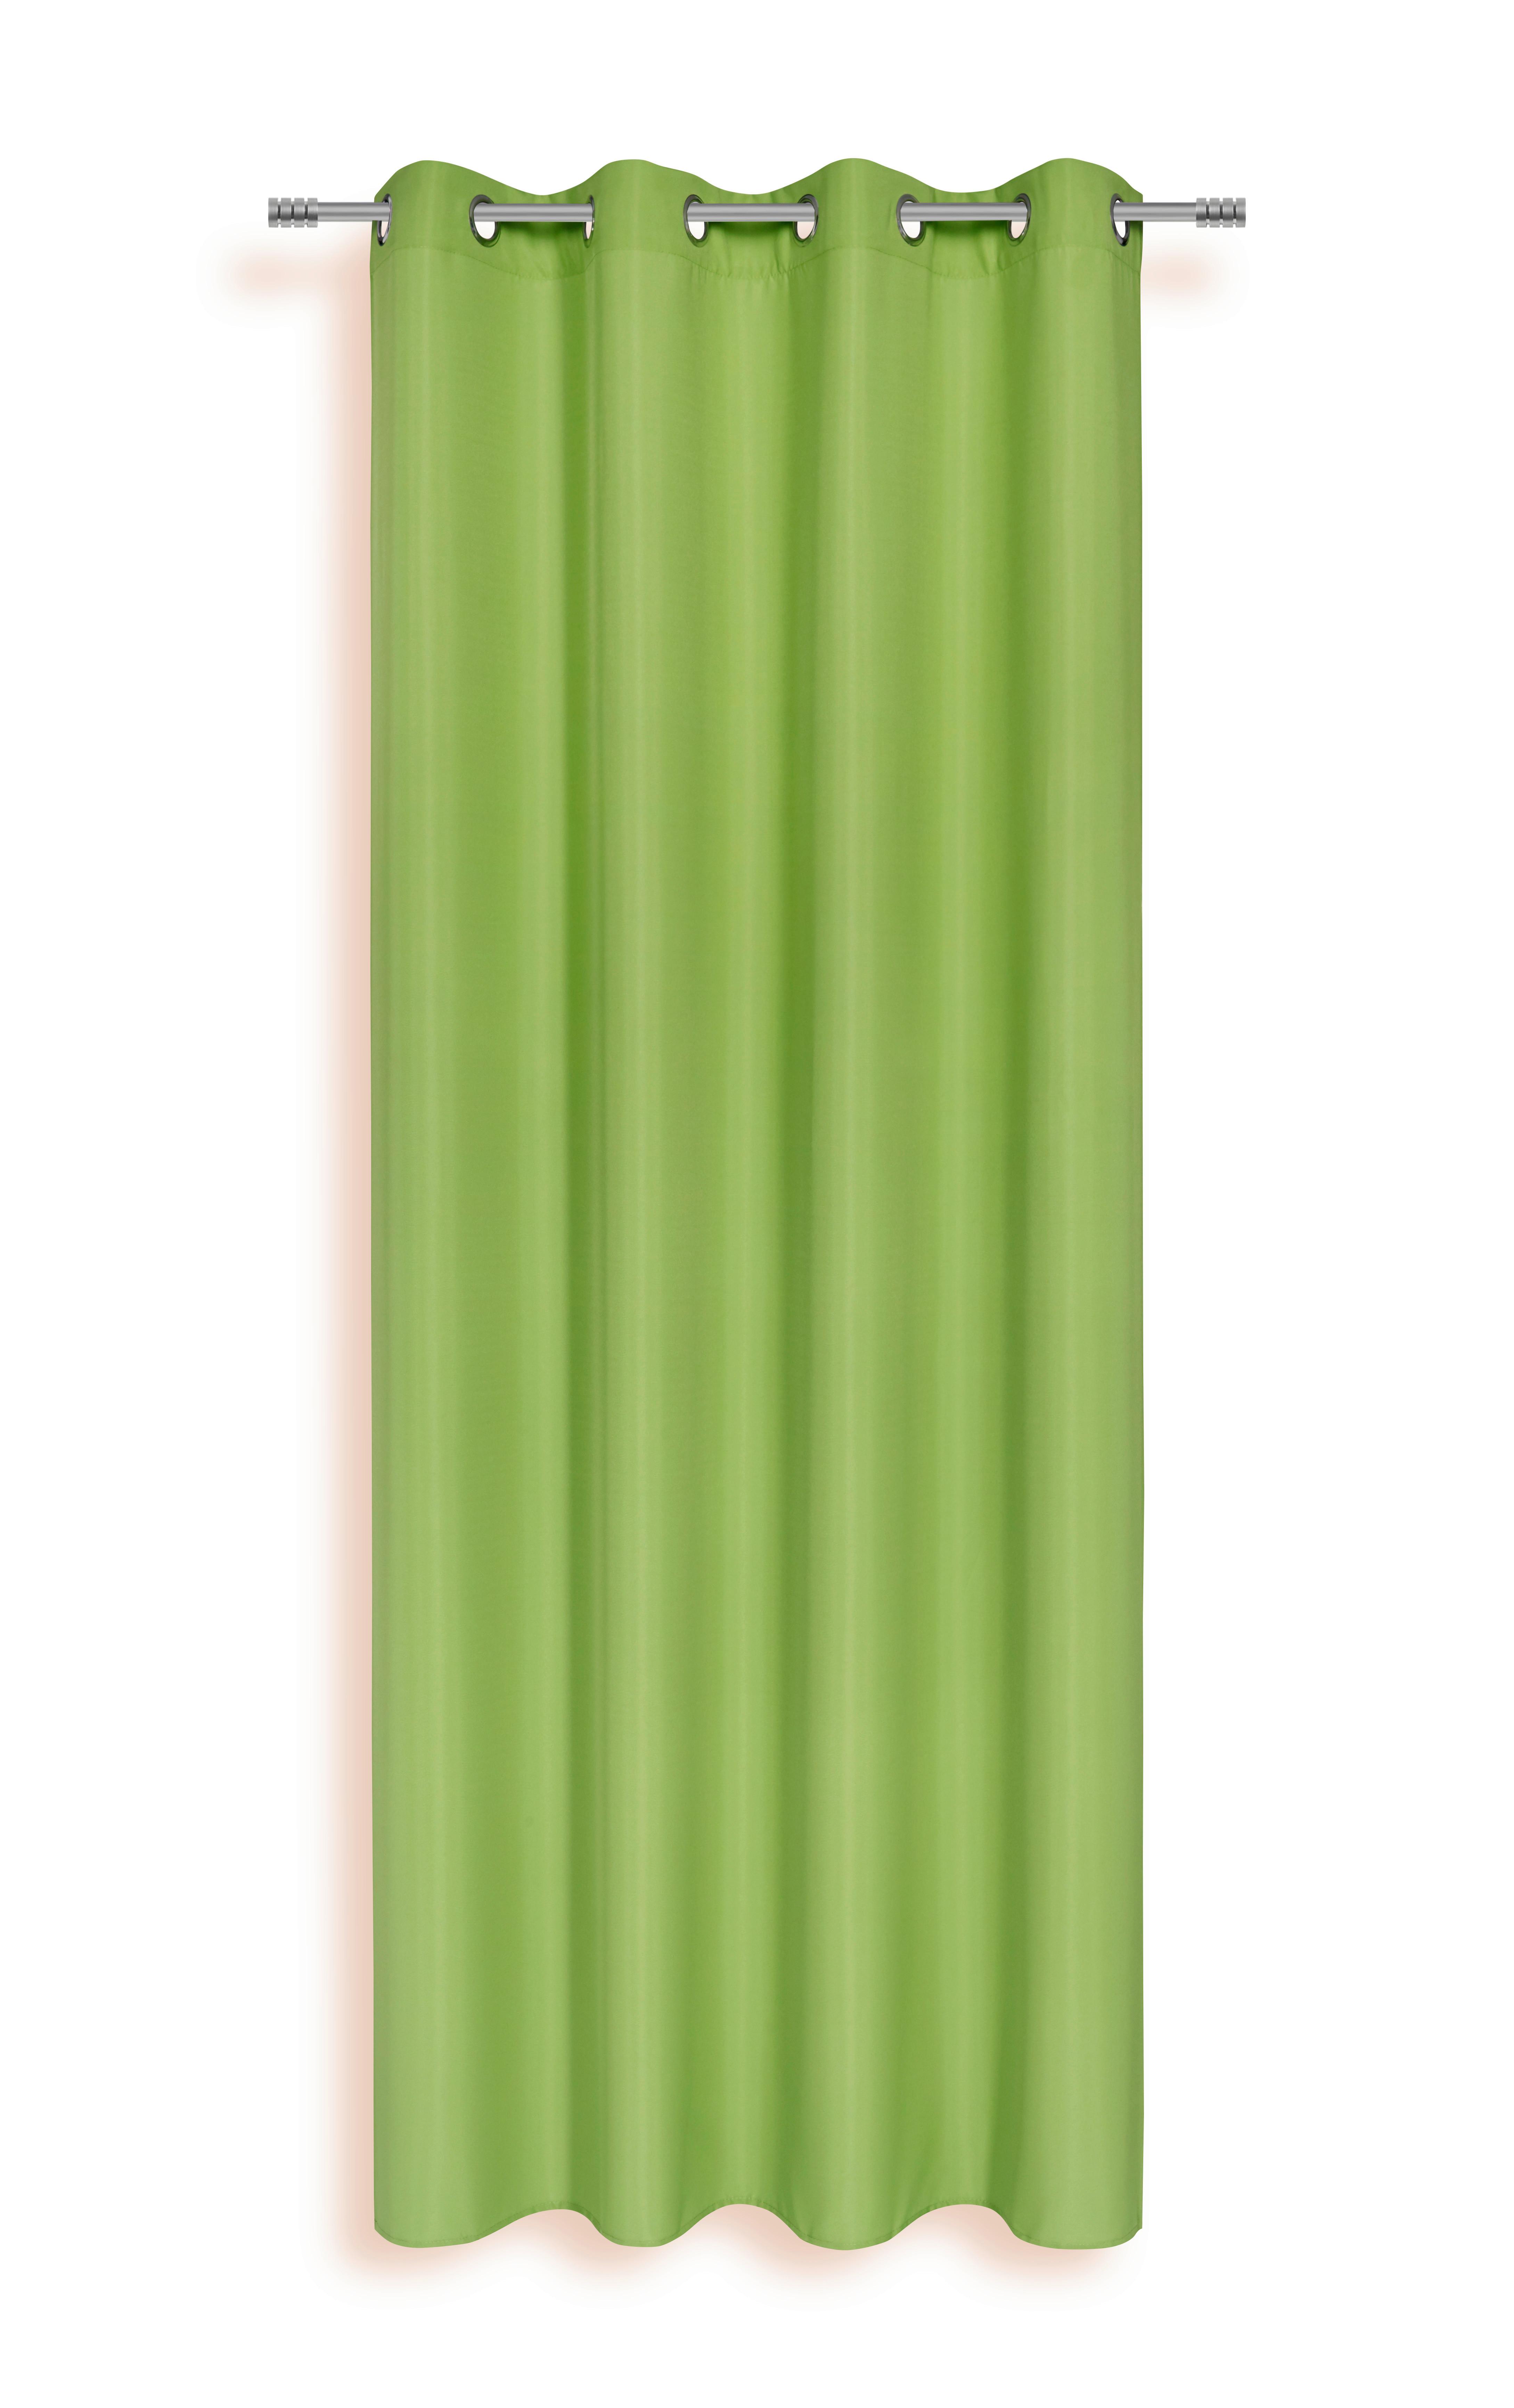 Készfüggöny Isolde - Zöld, konvencionális, Textil (140/245cm) - Ondega